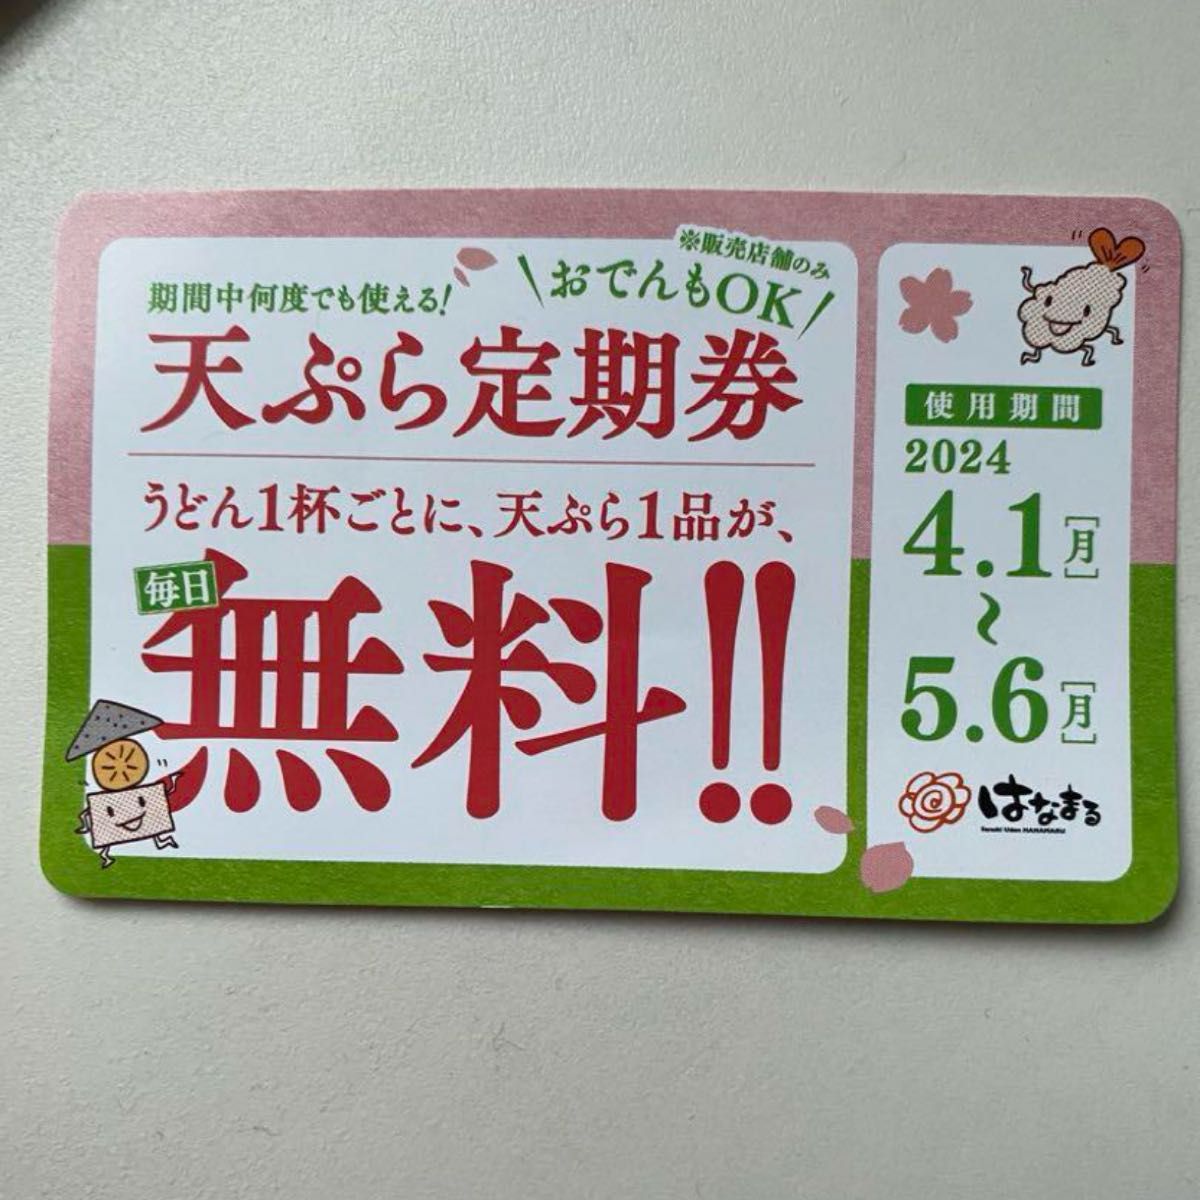 はなまるうどん　天ぷら定期券　(天ぷら、おでん一個無料) 5月6日まで有効